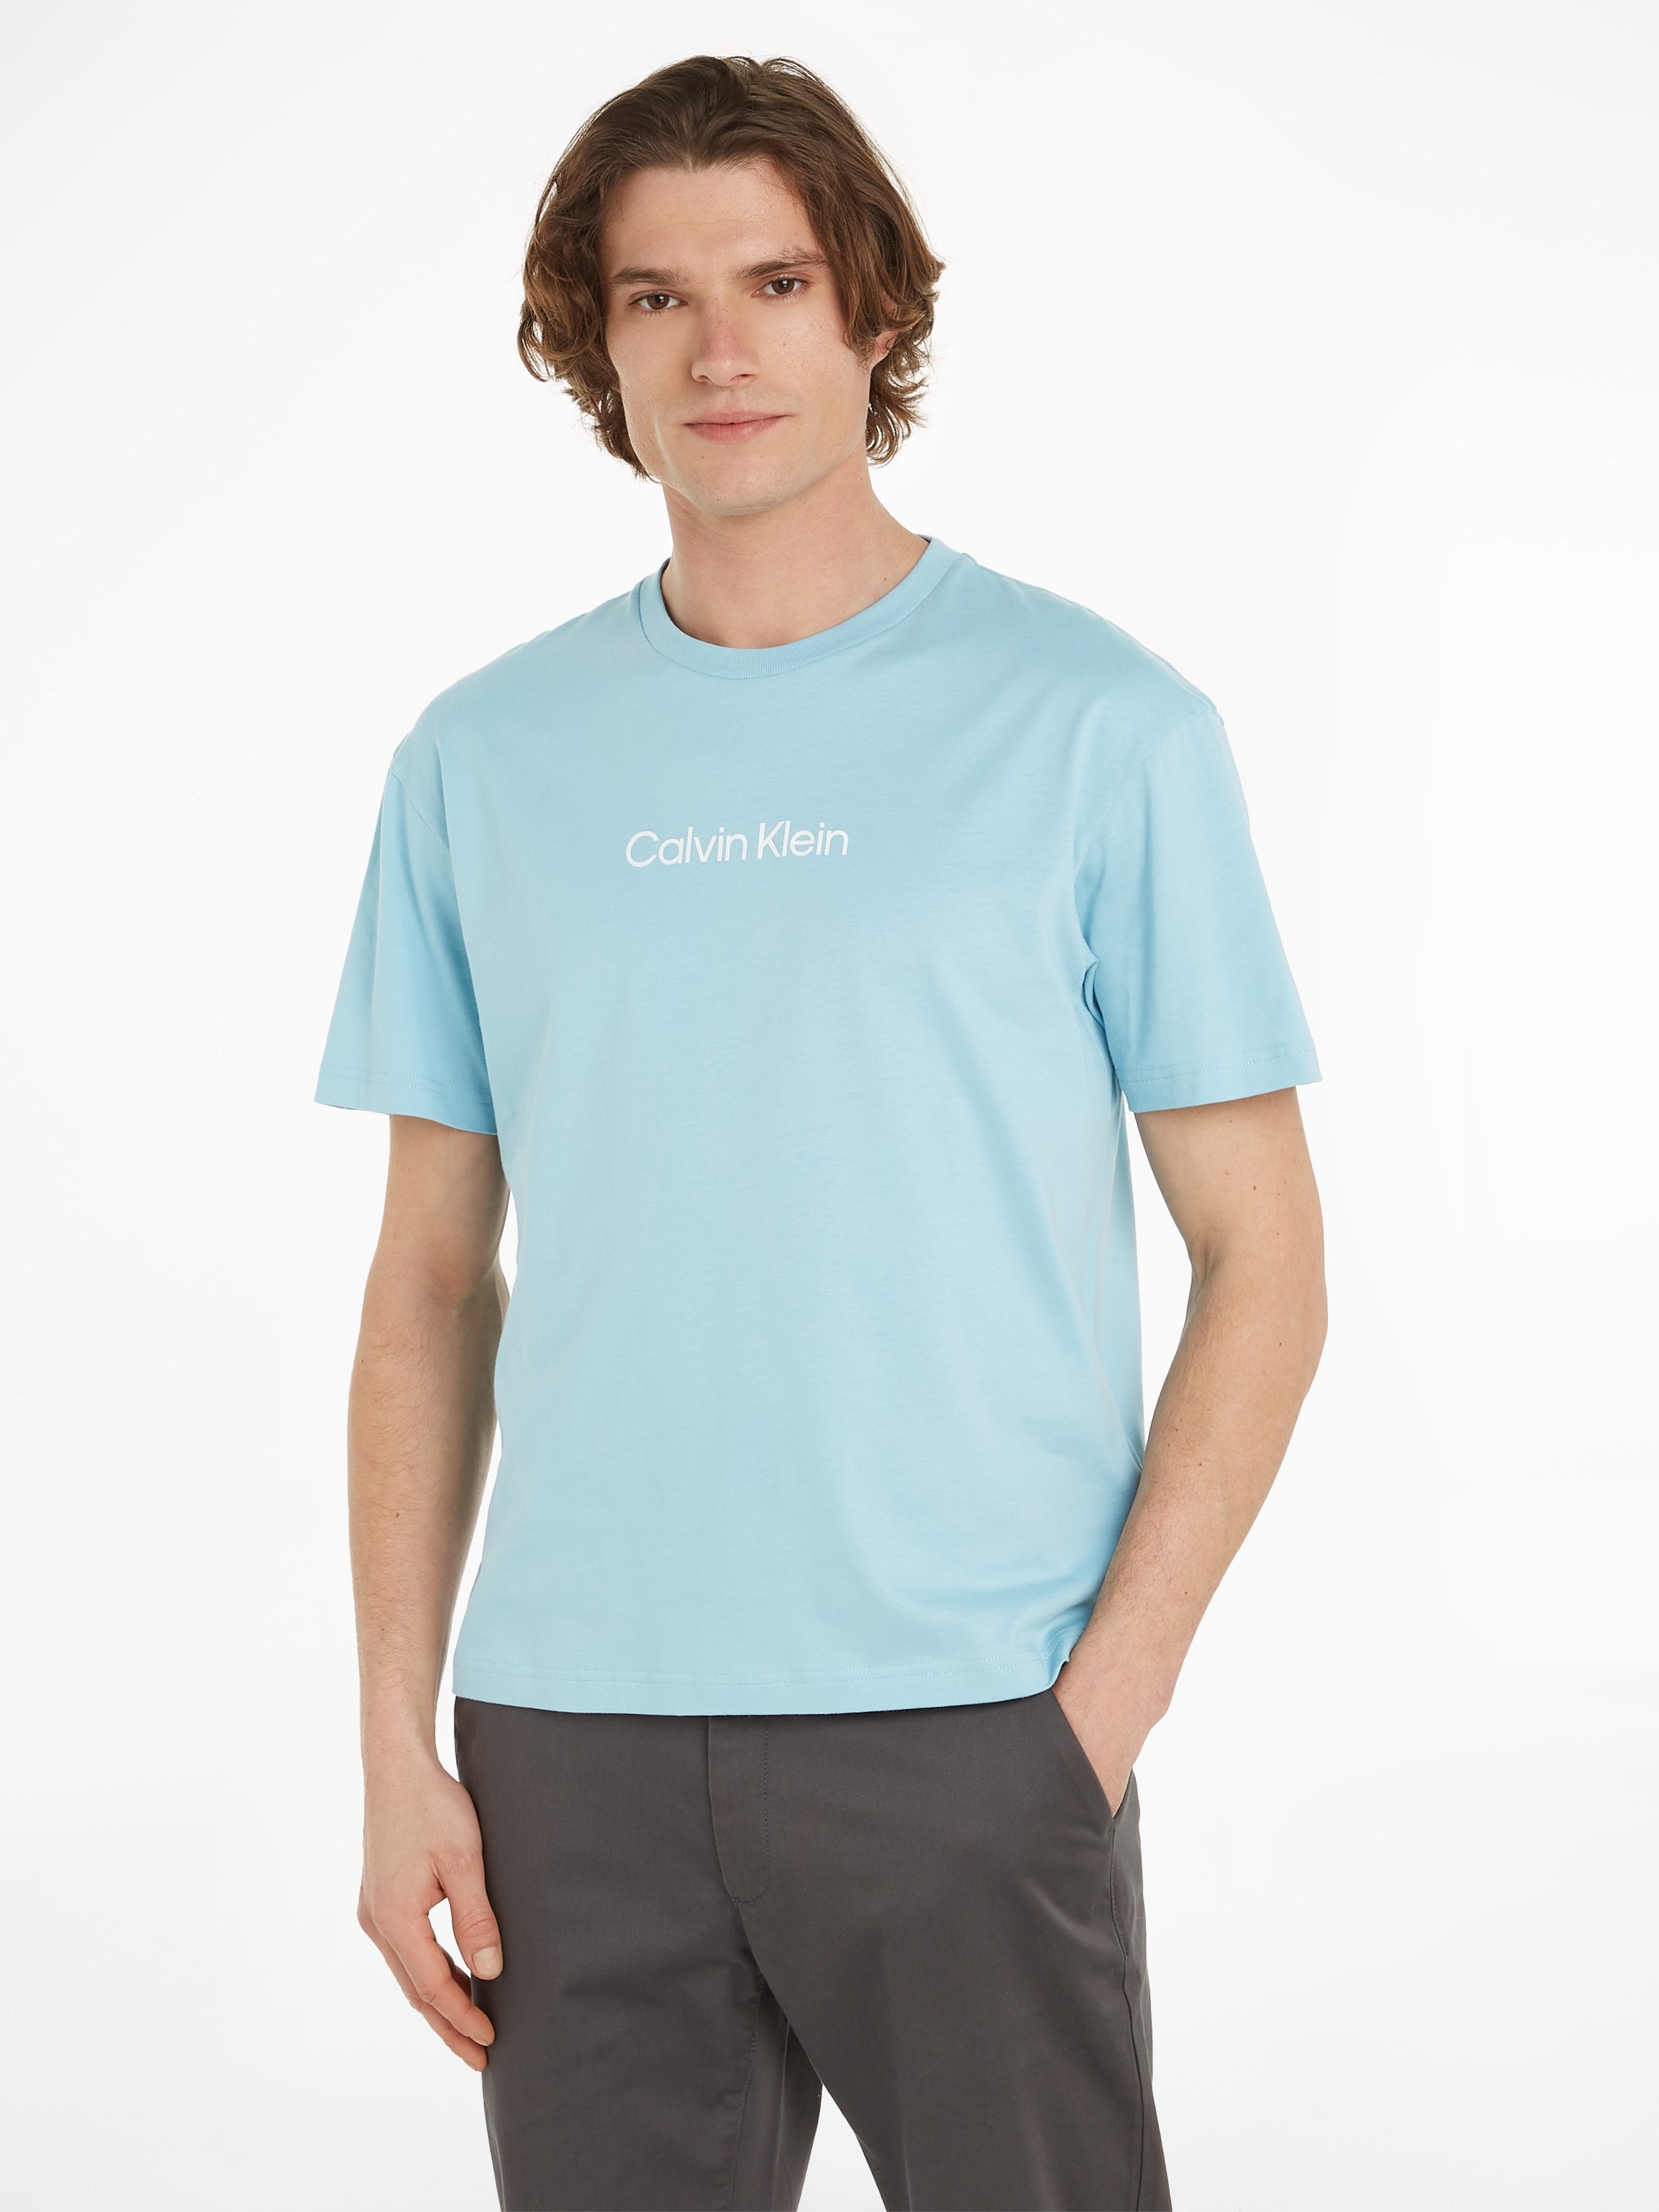 für ▷ | T-Shirt T-SHIRT« Klein COMFORT Calvin »HERO LOGO BAUR